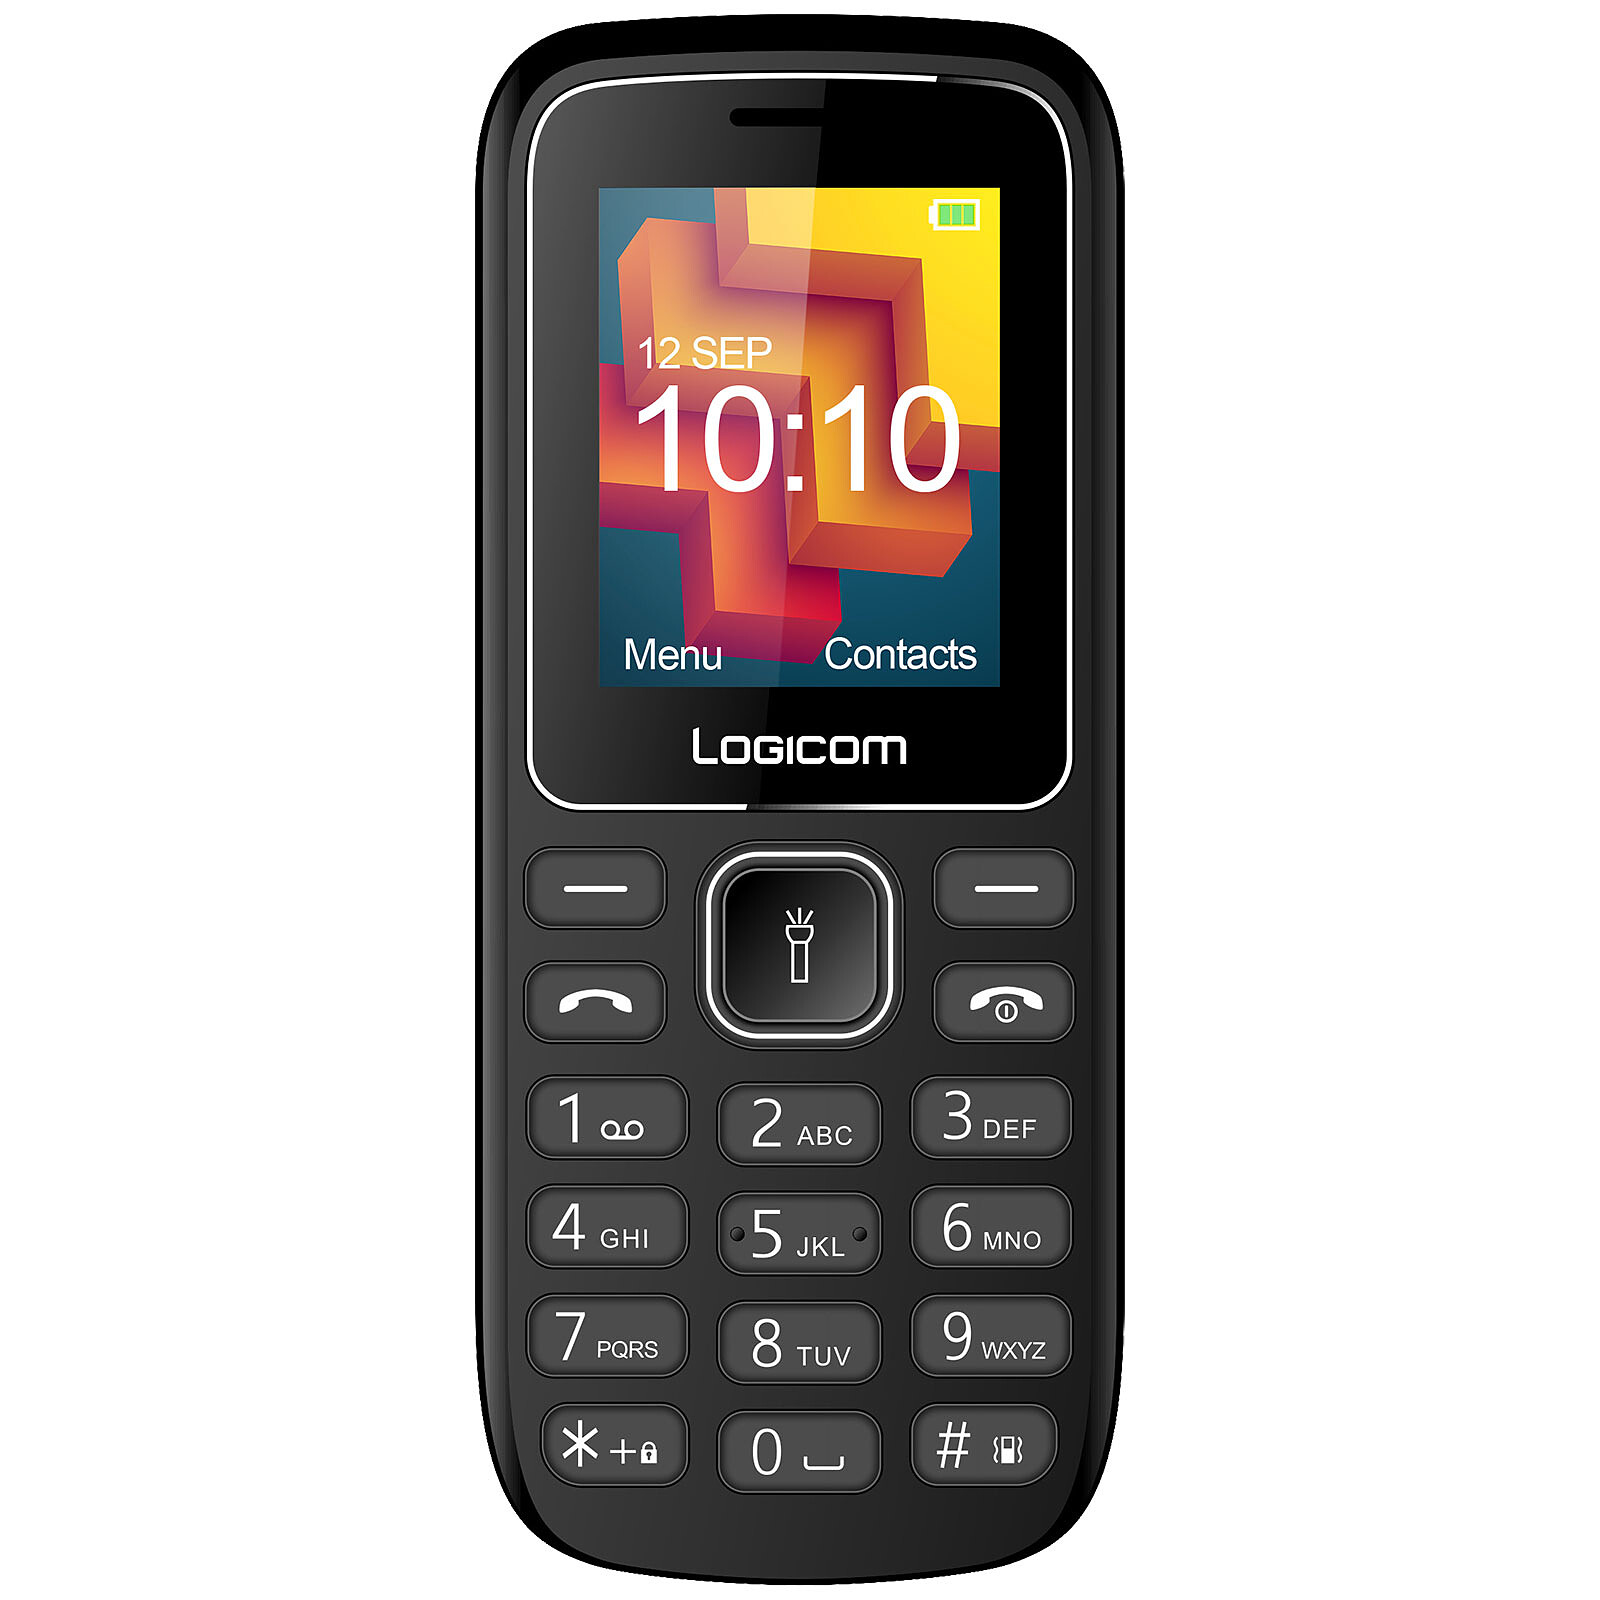 Logicom Le Posh 180 Noir - Mobile & smartphone - Garantie 3 ans LDLC